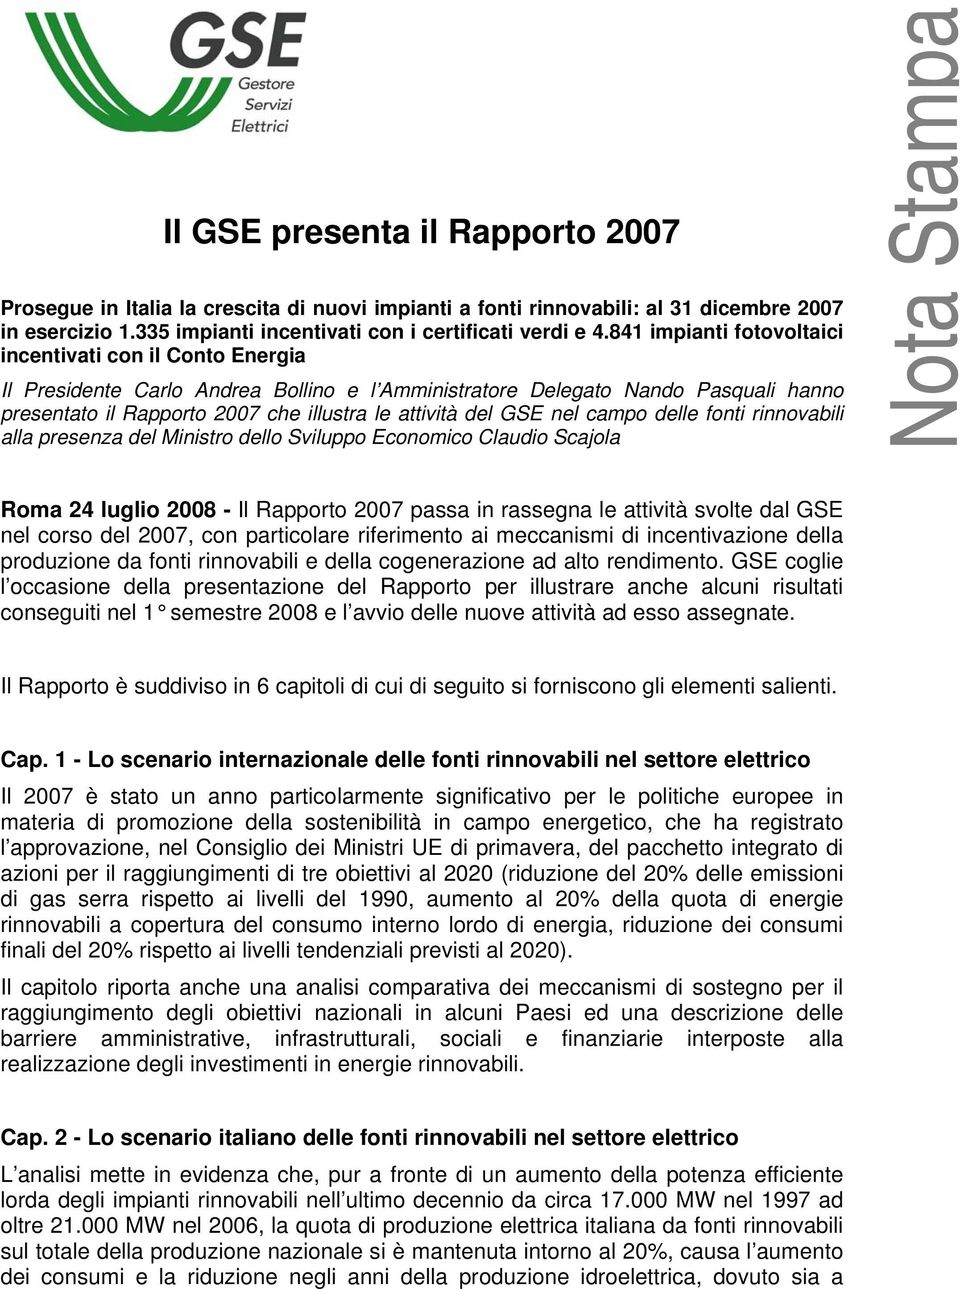 GSE nel campo delle fonti rinnovabili alla presenza del Ministro dello Sviluppo Economico Claudio Scajola Roma 24 luglio 2008 - Il Rapporto 2007 passa in rassegna le attività svolte dal GSE nel corso